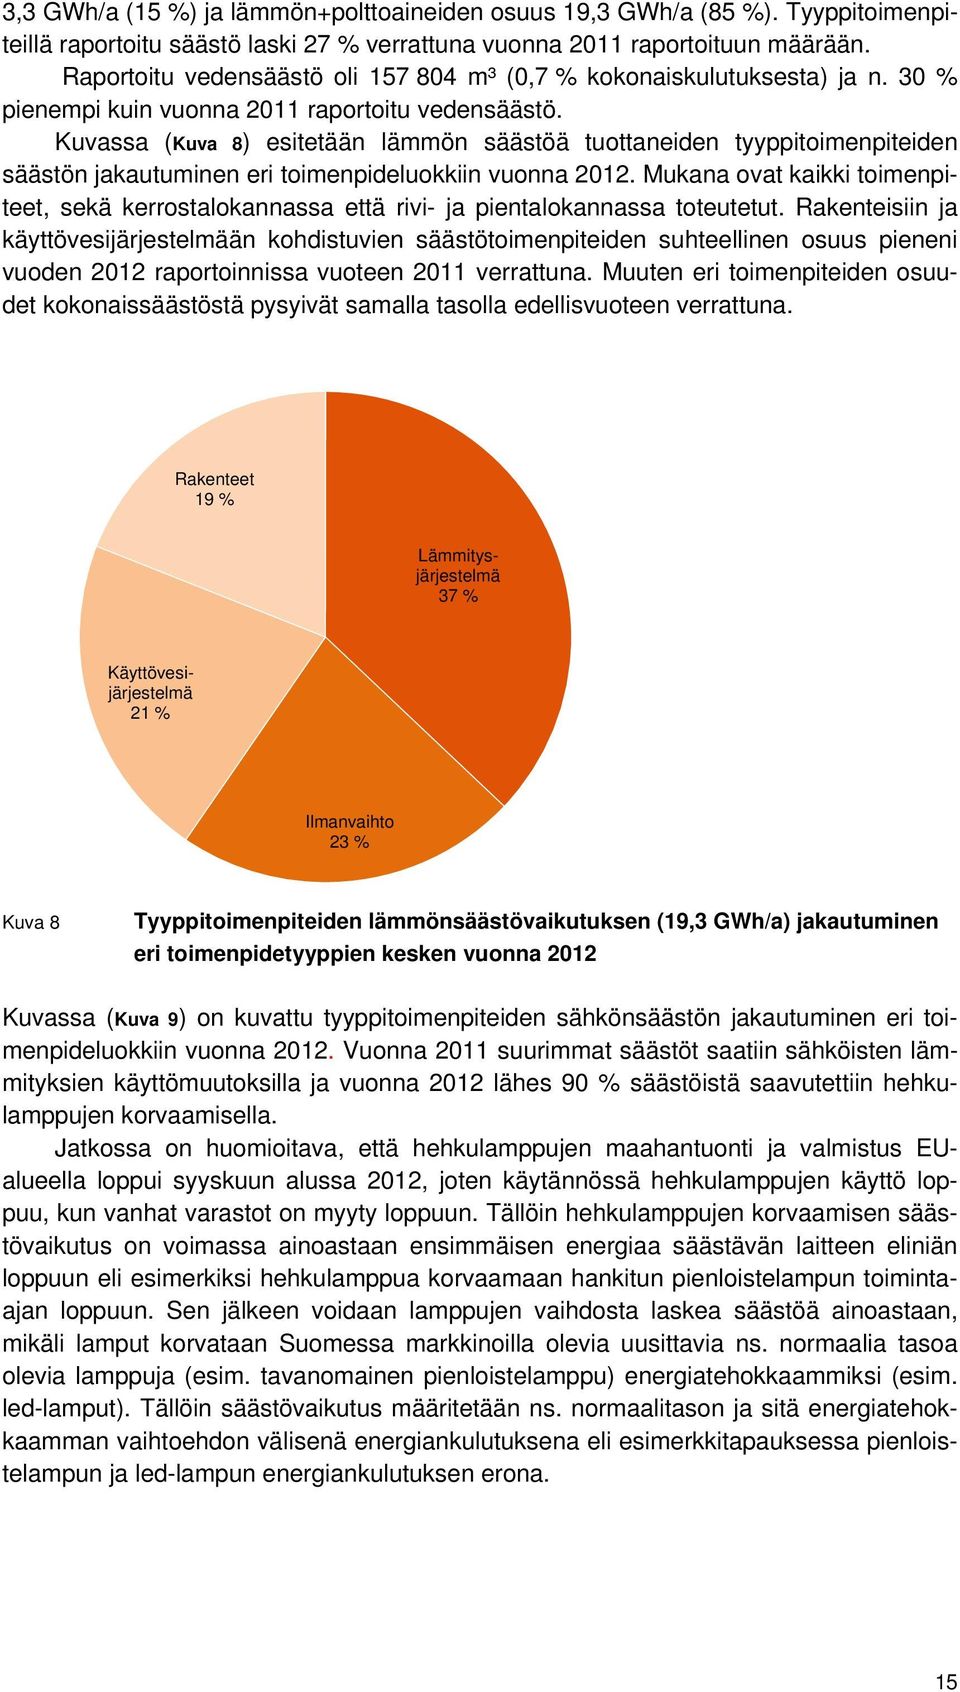 Kuvassa (Kuva 8) esitetään lämmön säästöä tuottaneiden tyyppitoimenpiteiden säästön jakautuminen eri toimenpideluokkiin vuonna 2012.